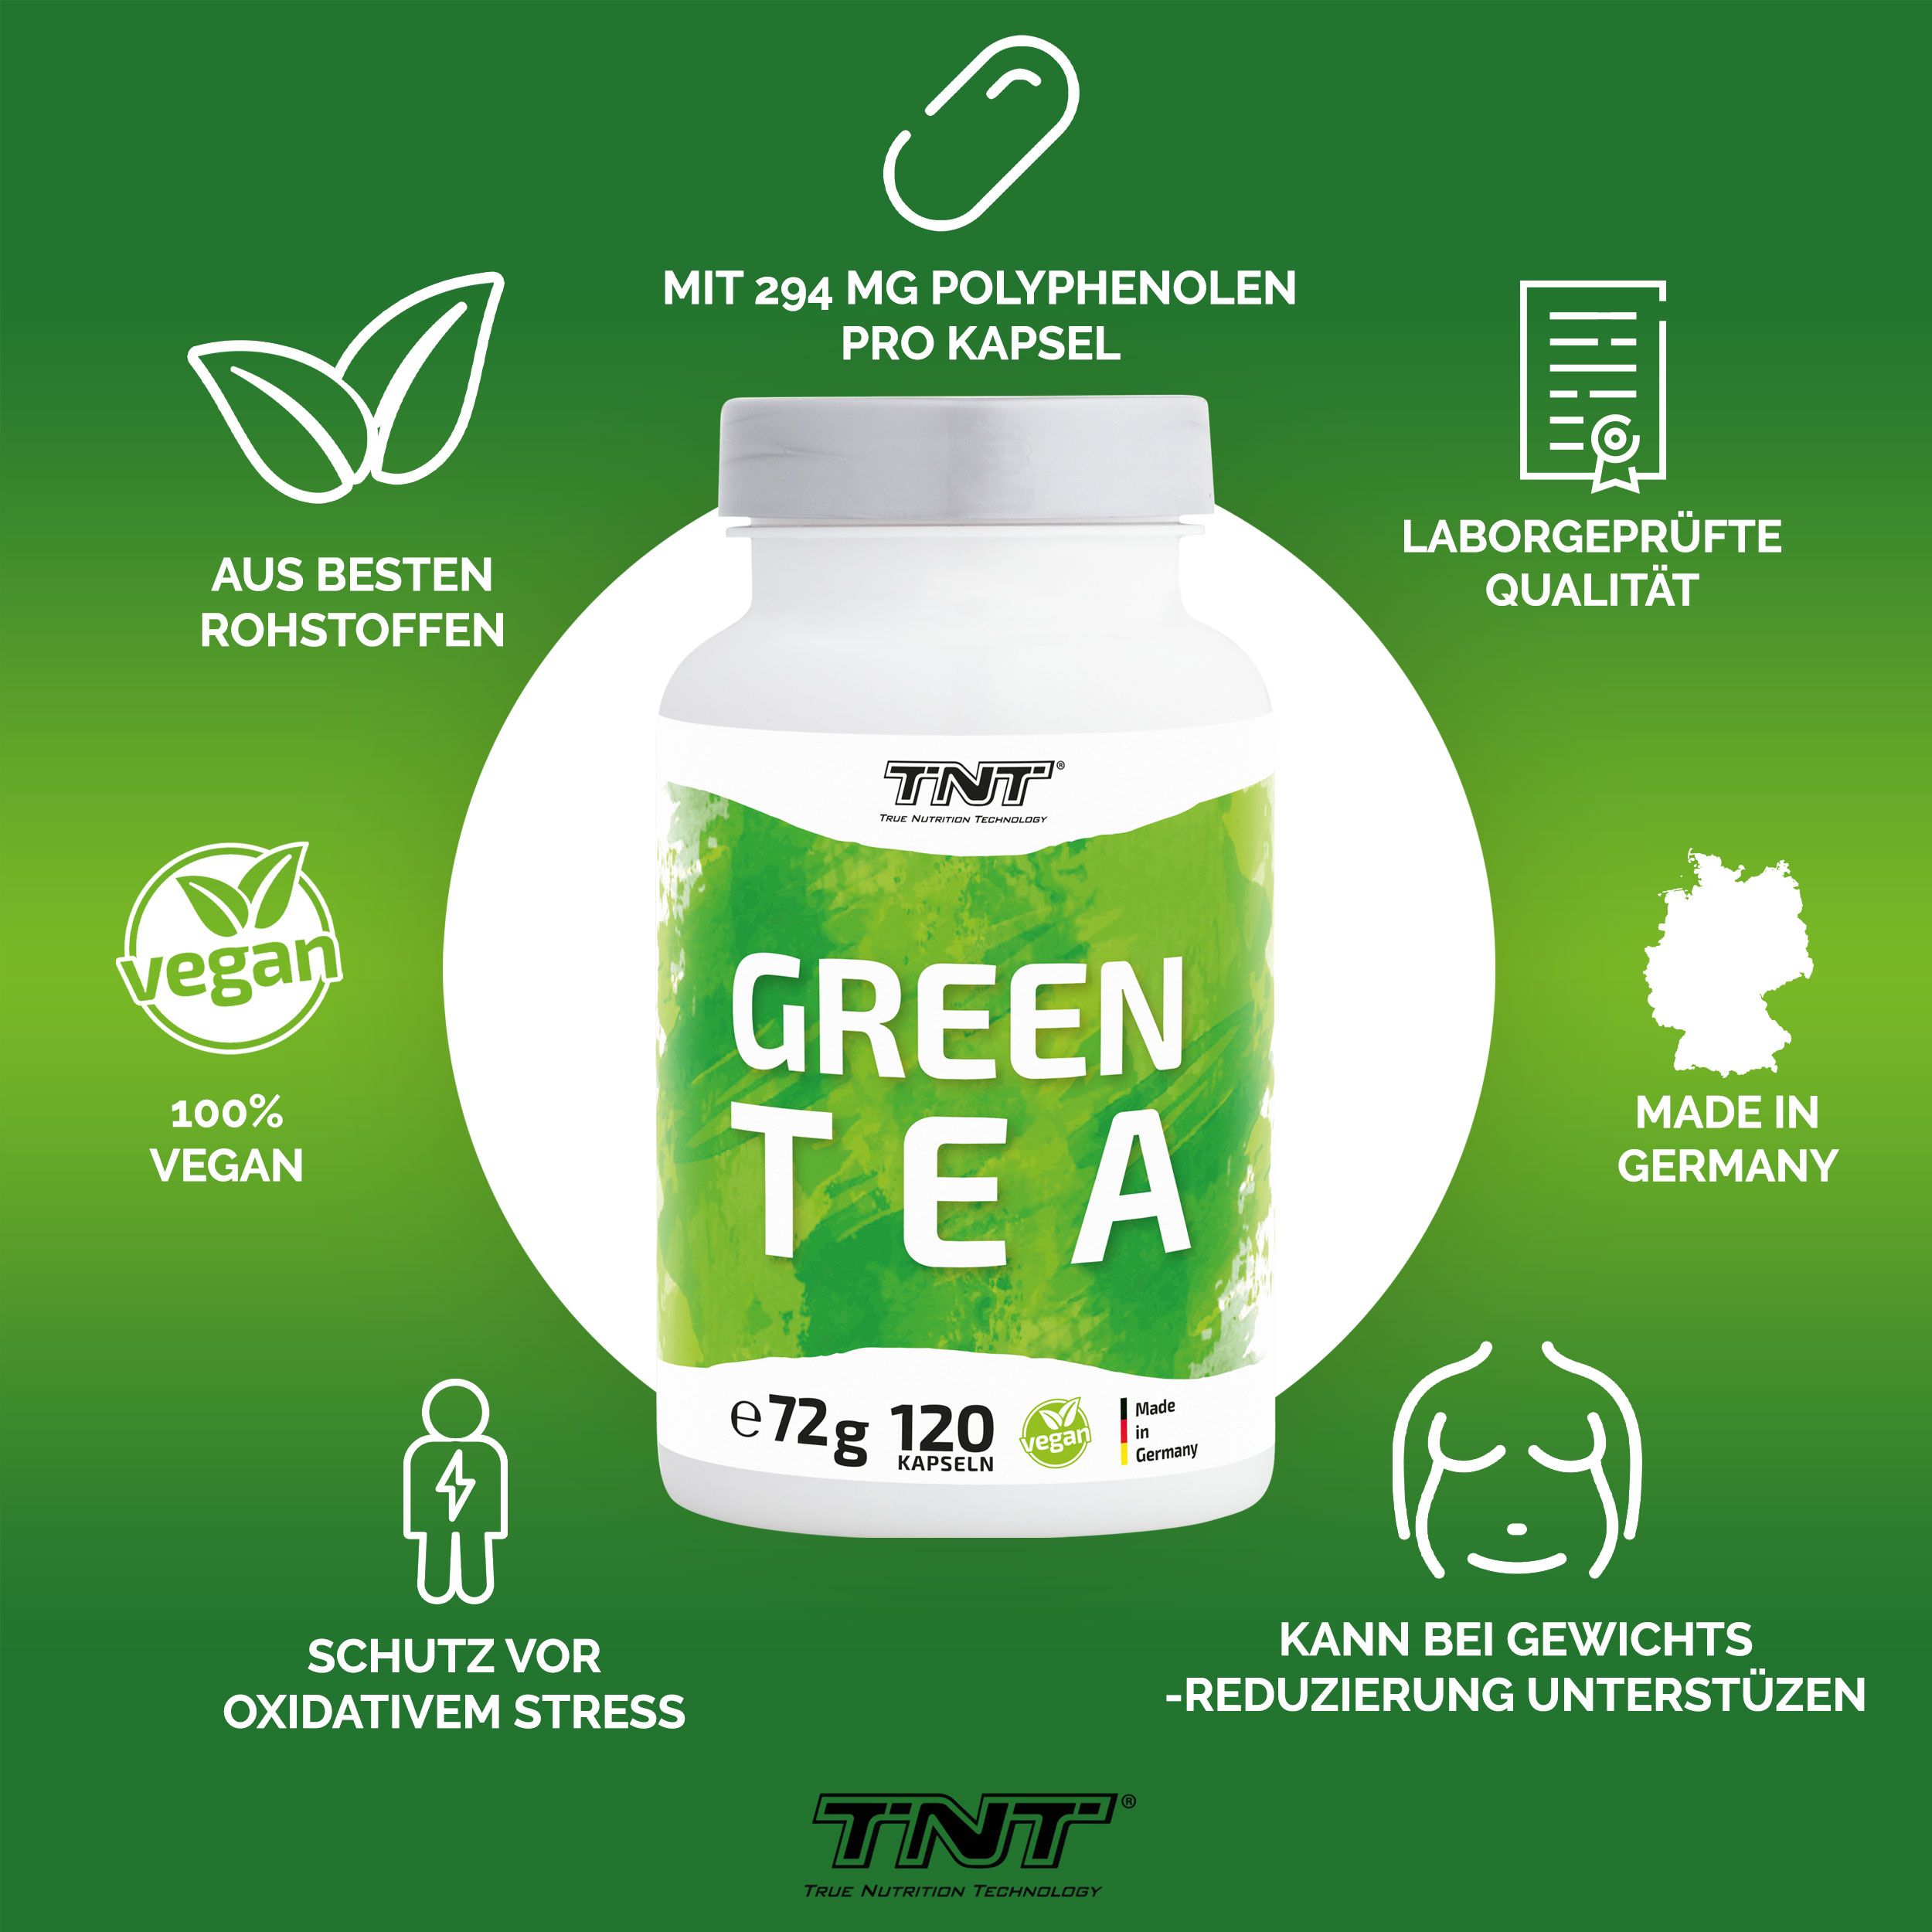 TNT Green Tea